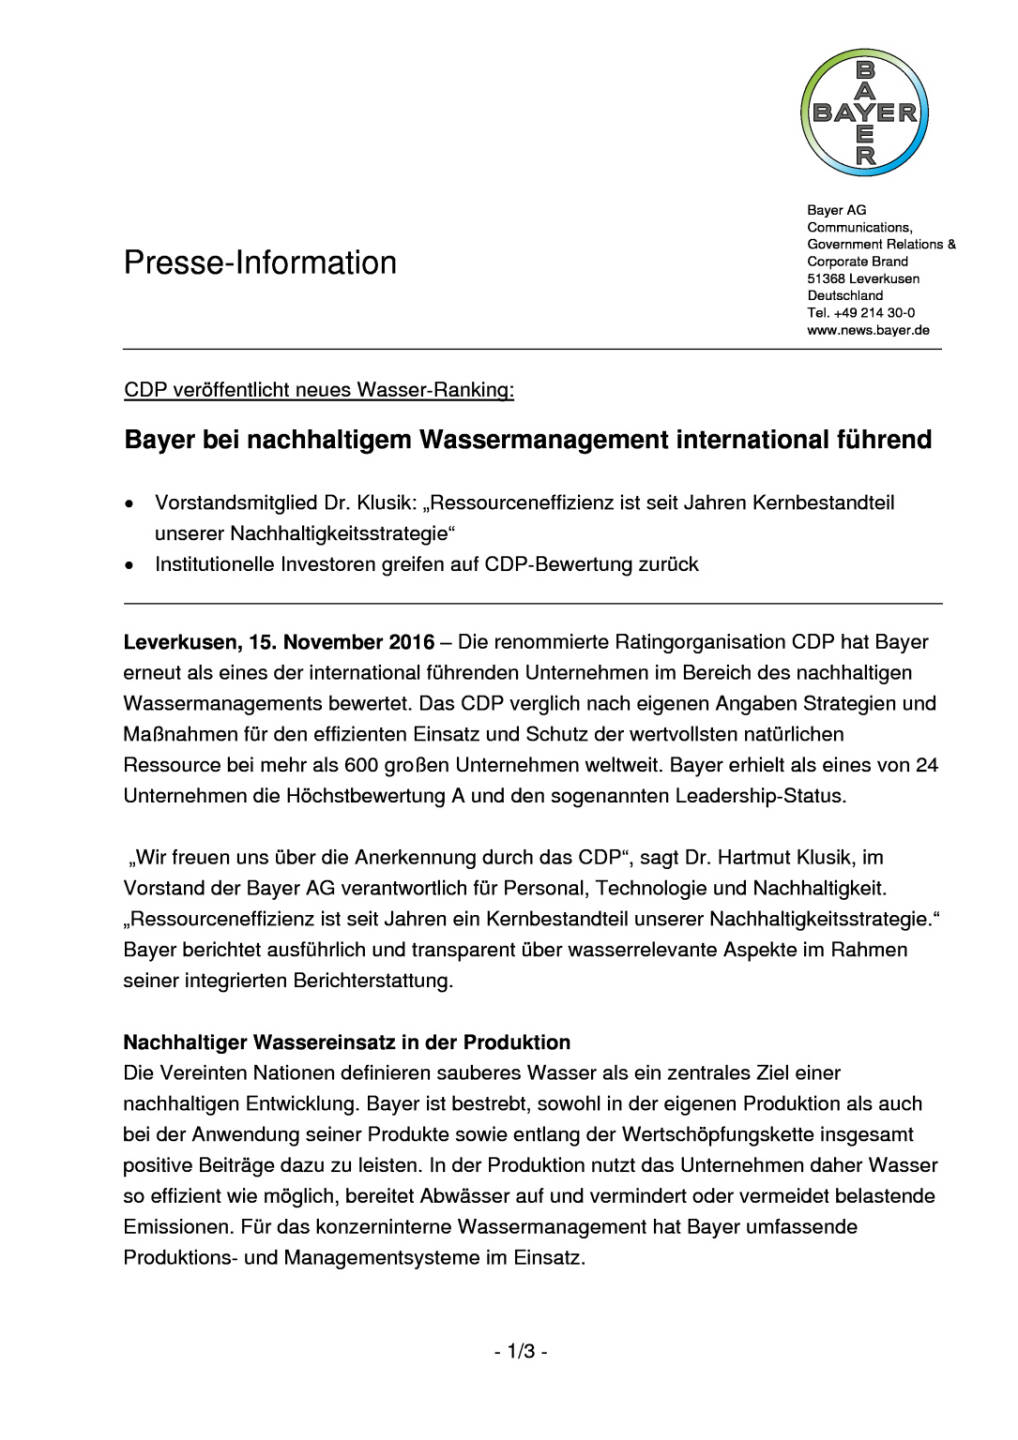 Bayer bei nachhaltigem Wassermanagement international führend , Seite 1/3, komplettes Dokument unter http://boerse-social.com/static/uploads/file_1979_bayer_bei_nachhaltigem_wassermanagement_international_fuehrend.pdf